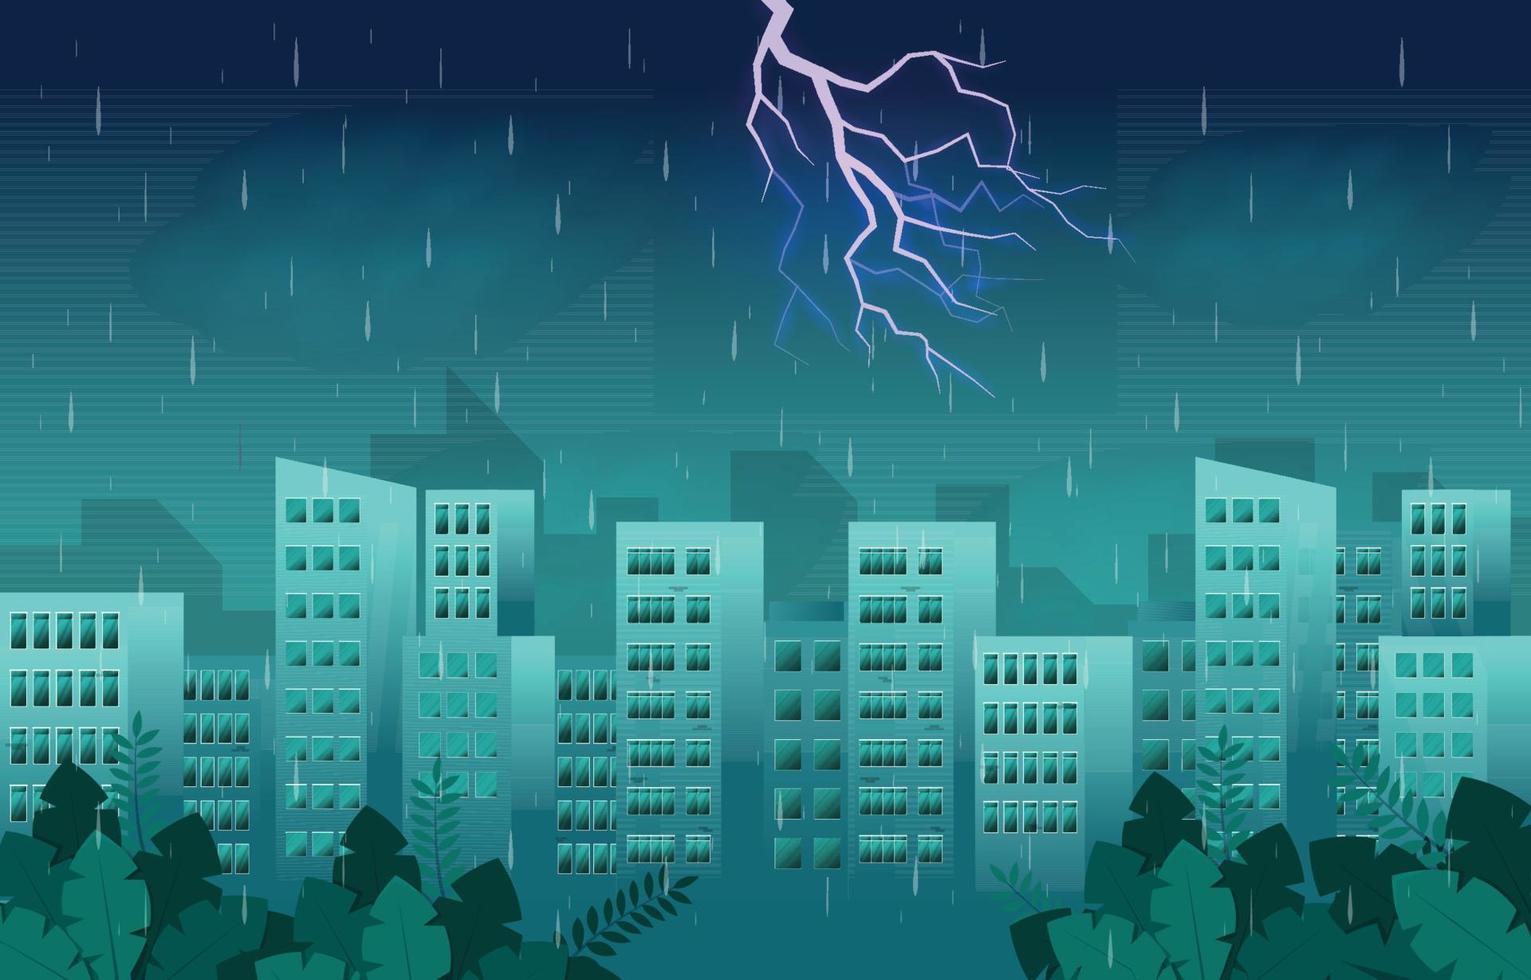 tonnerre orage foudre temps pluvieux ville bâtiment horizon paysage urbain illustration vecteur